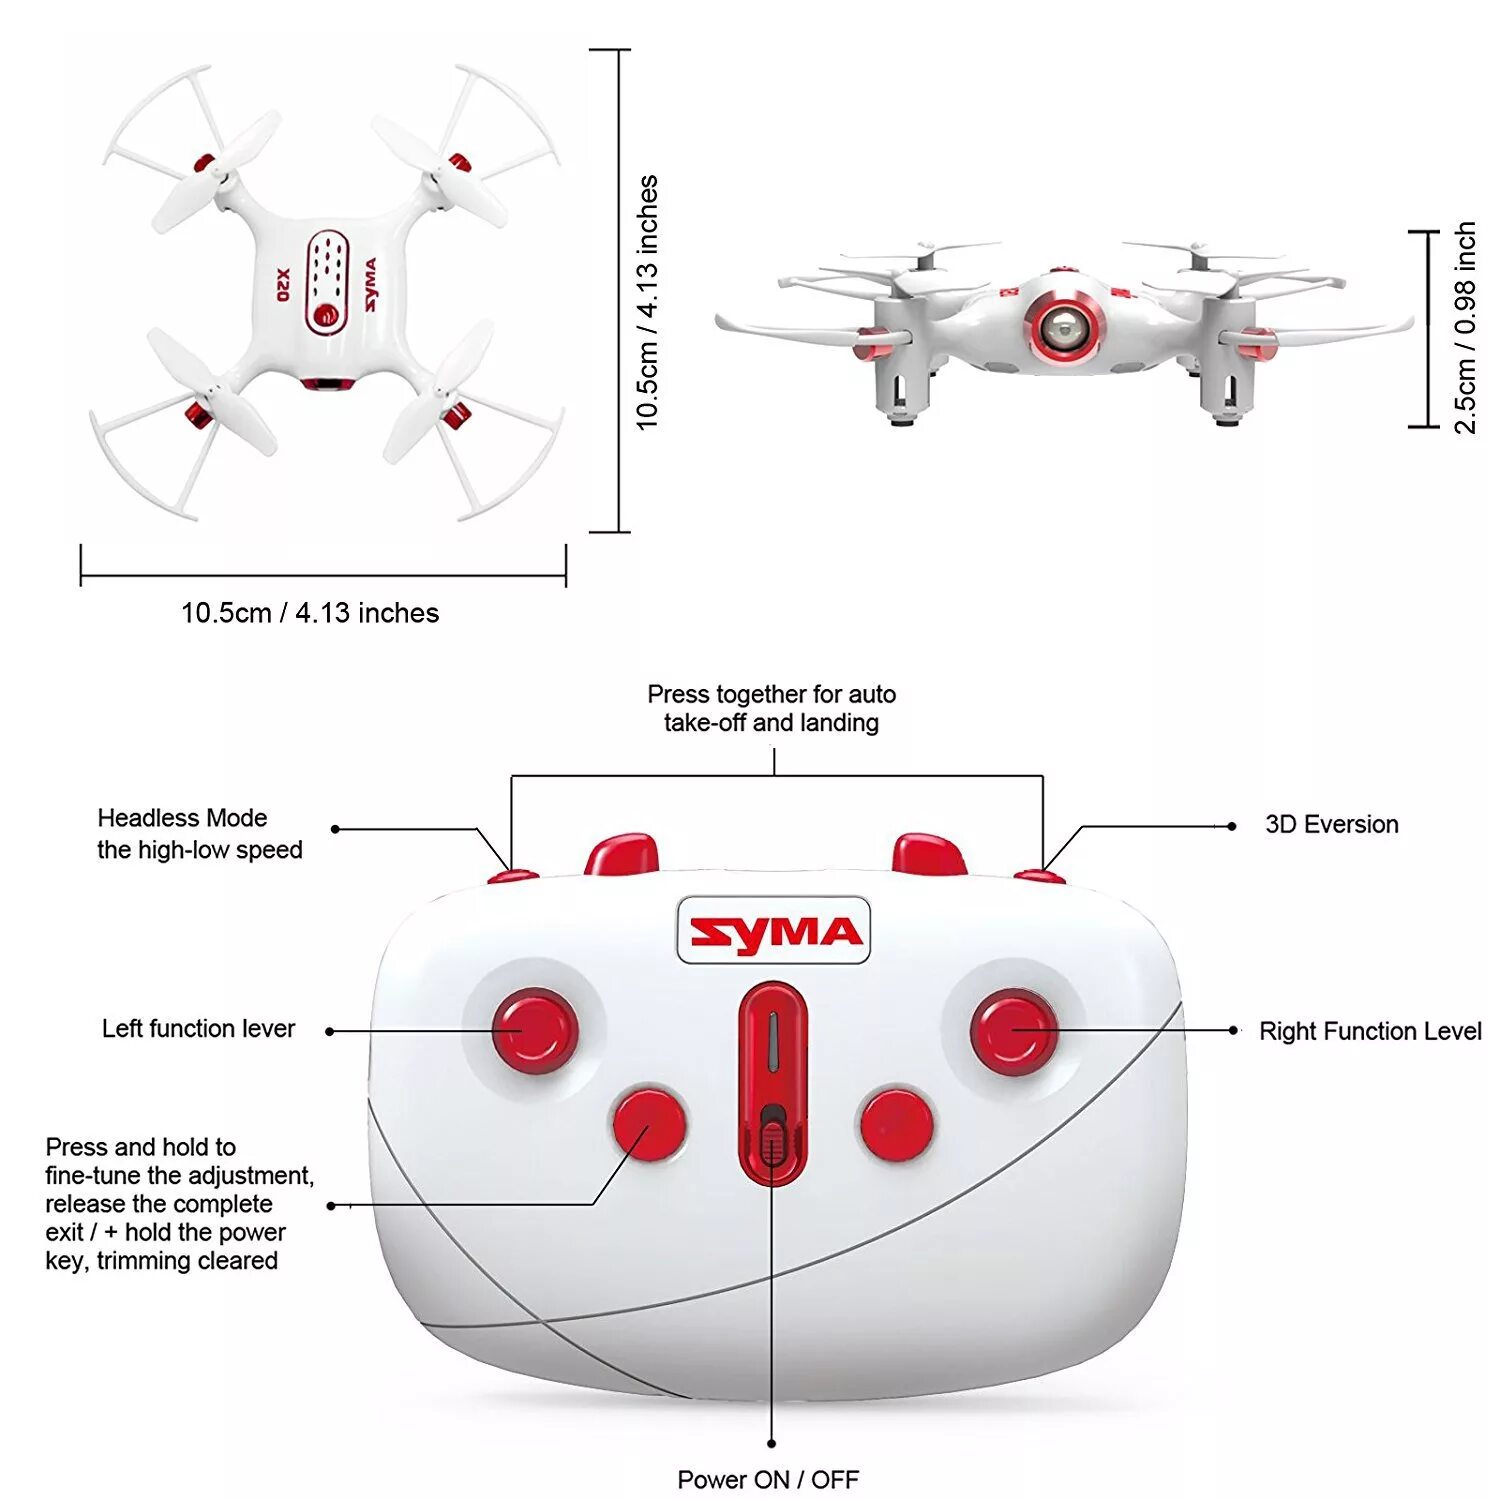 Сума го. Квадрокоптер Syma x20s. Пульт управления Syma x20. Радиоуправляемый квадрокоптер Syma x20-s RTF 2.4G - Syma-x20-s. X20 Pocket квадрокоптер bycnherwsz.